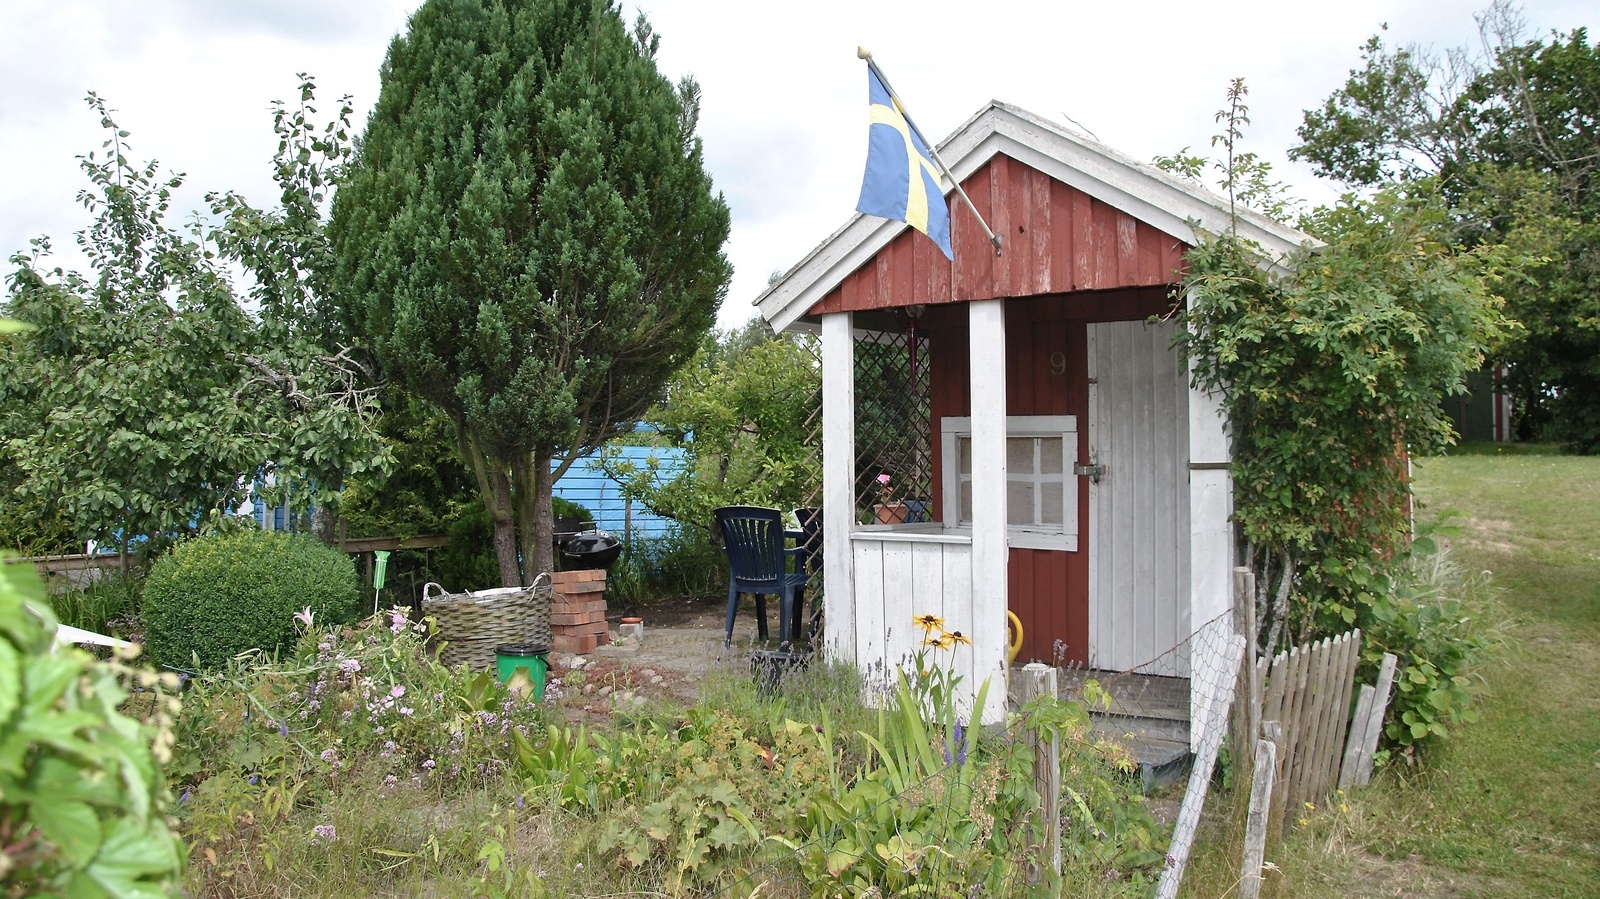 Kolonistuga på Stattena Koloniförening den 22 juli 2019.